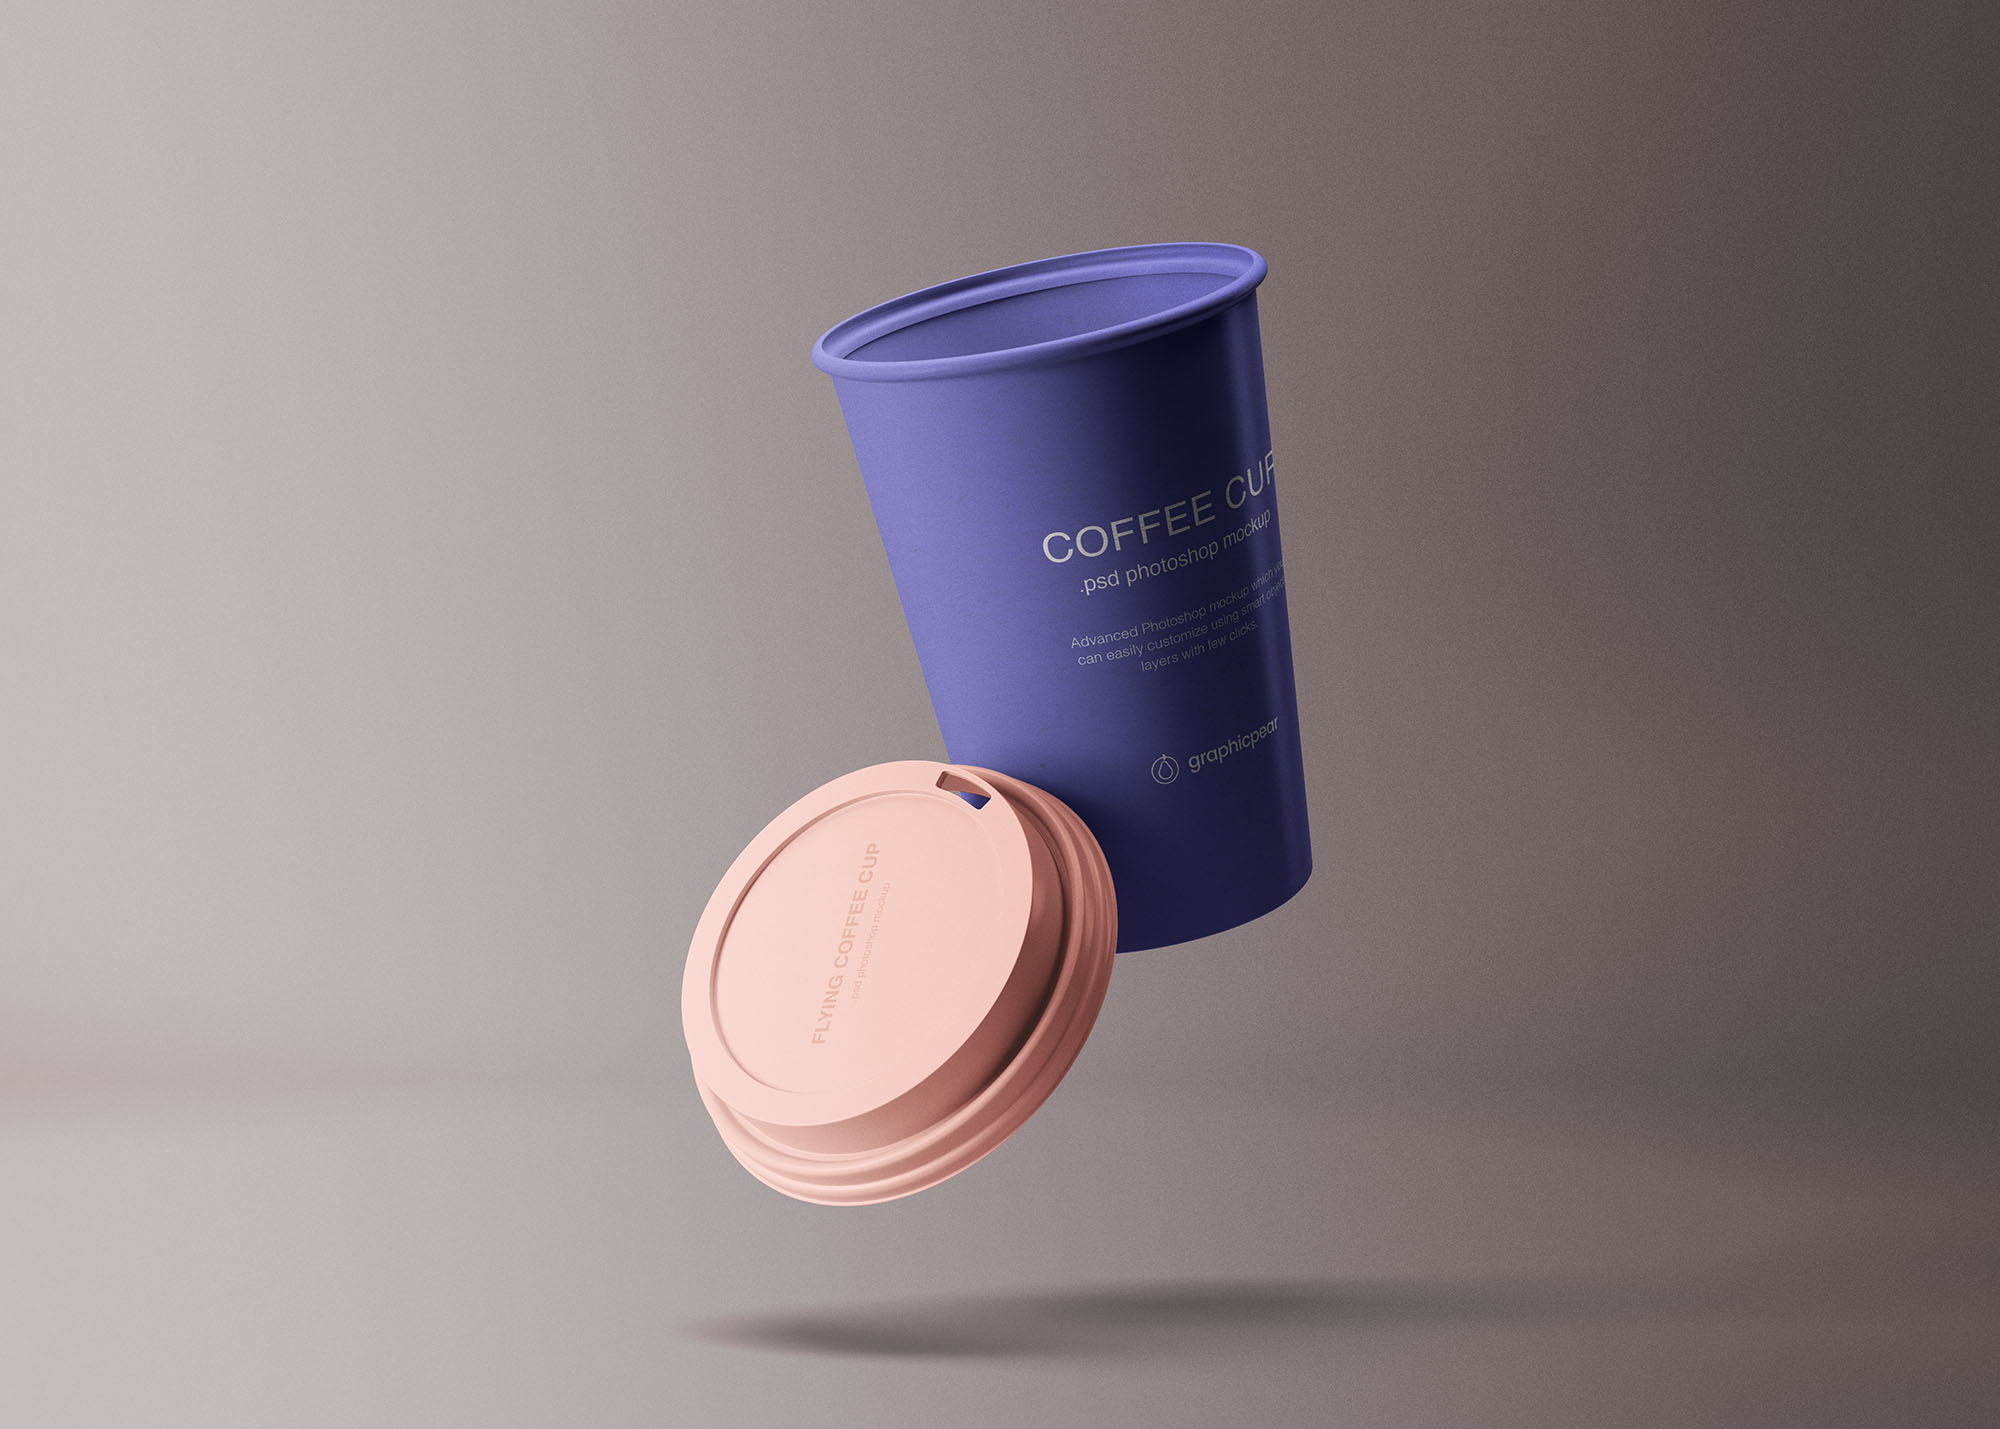 创意纸杯设计定制外观效果图样机模板 Flying Coffee Cup Mockup插图